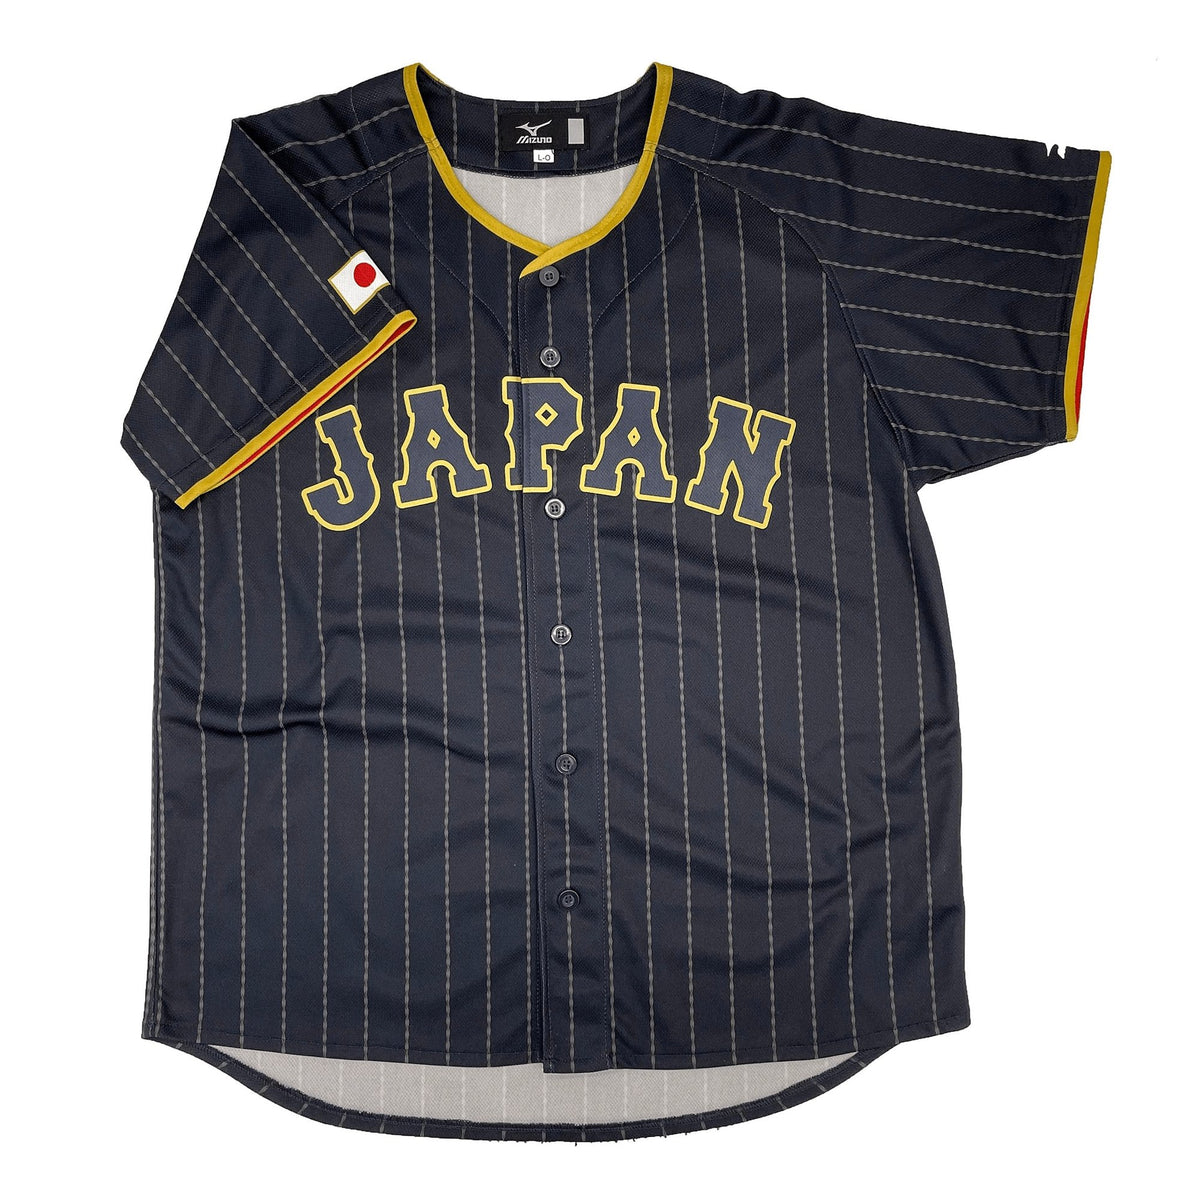 Mizuno WBC World Baseball Classic Samurai Japan Jersey Tetsuto Yamada #23 –  Sugoi JDM